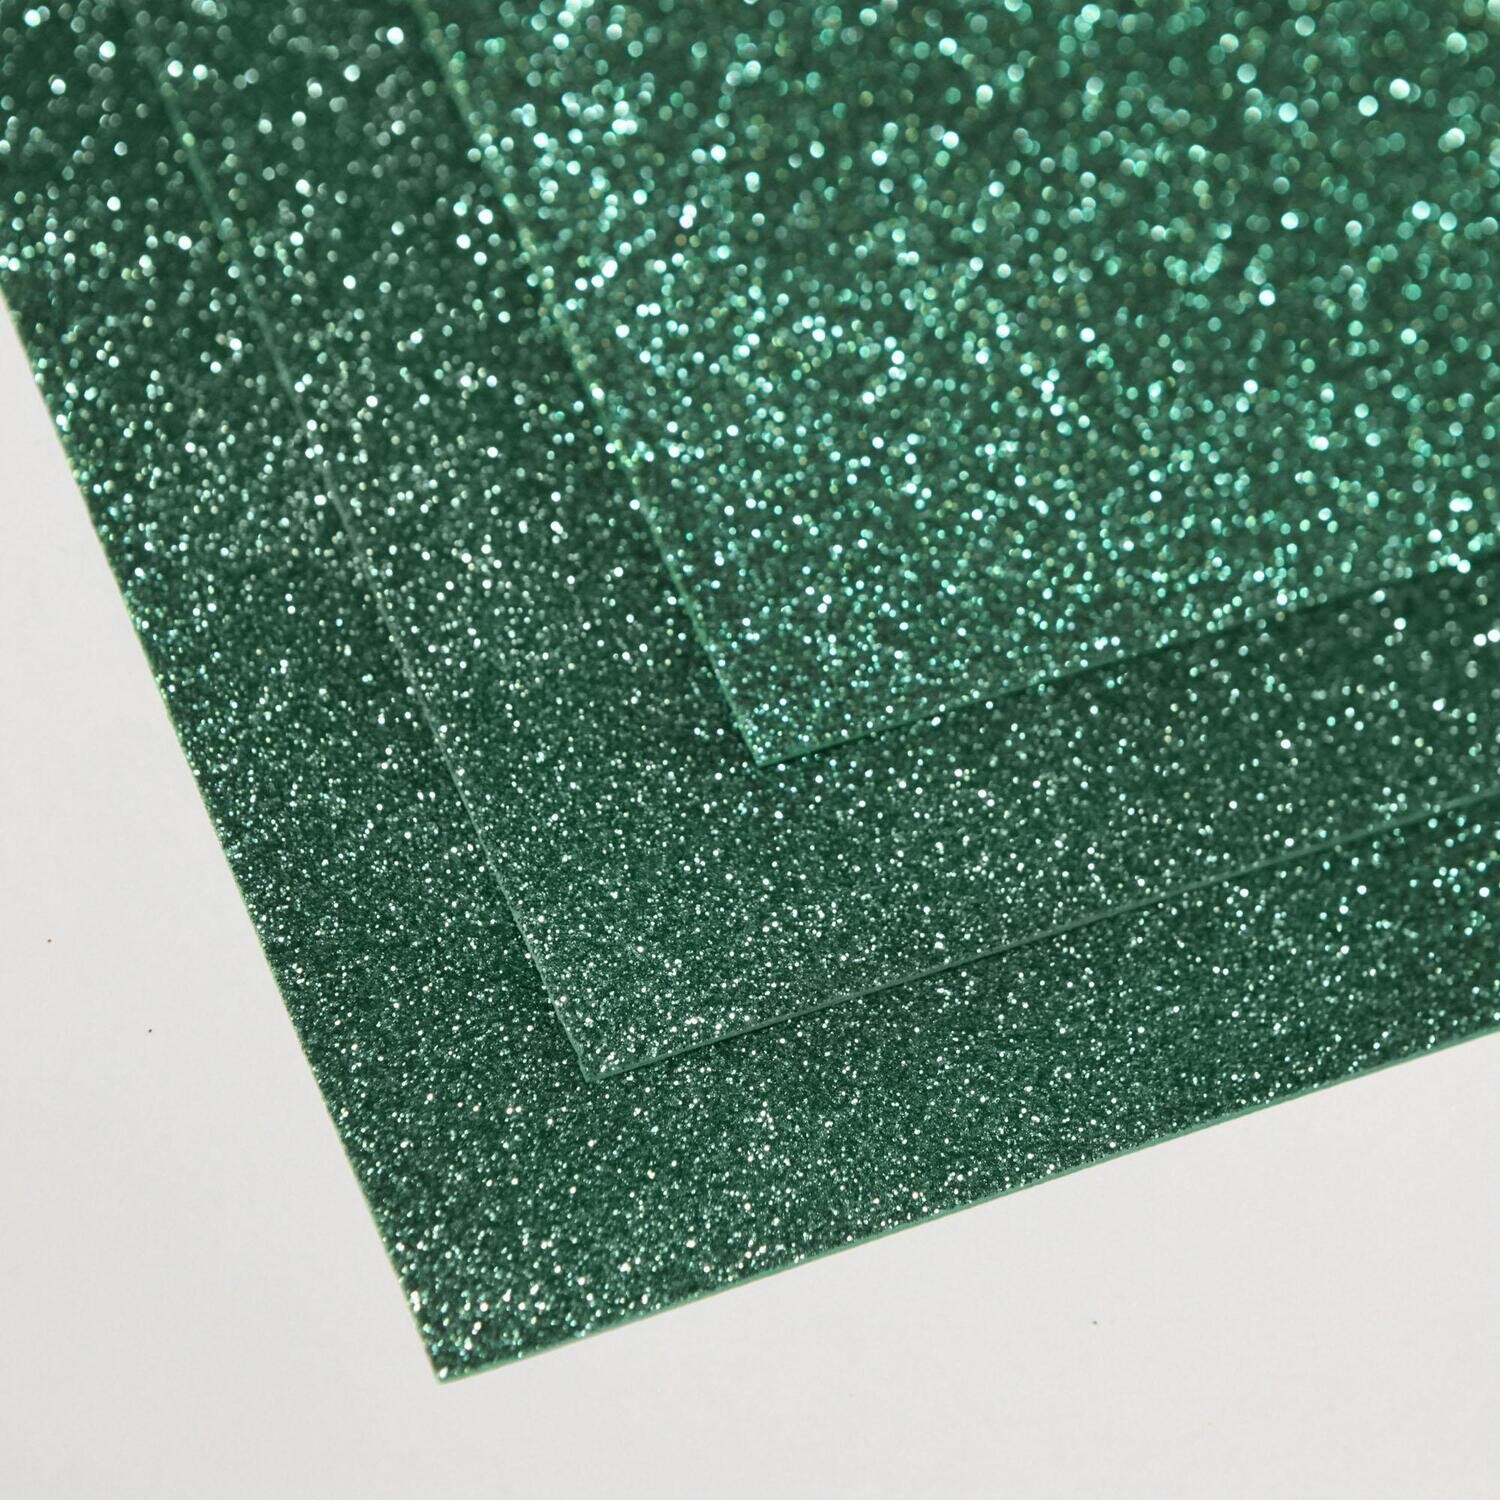 Фоамиран глиттерный - толщина 1,5 мм , размер листа 60/70 см.
Цвет - травяной